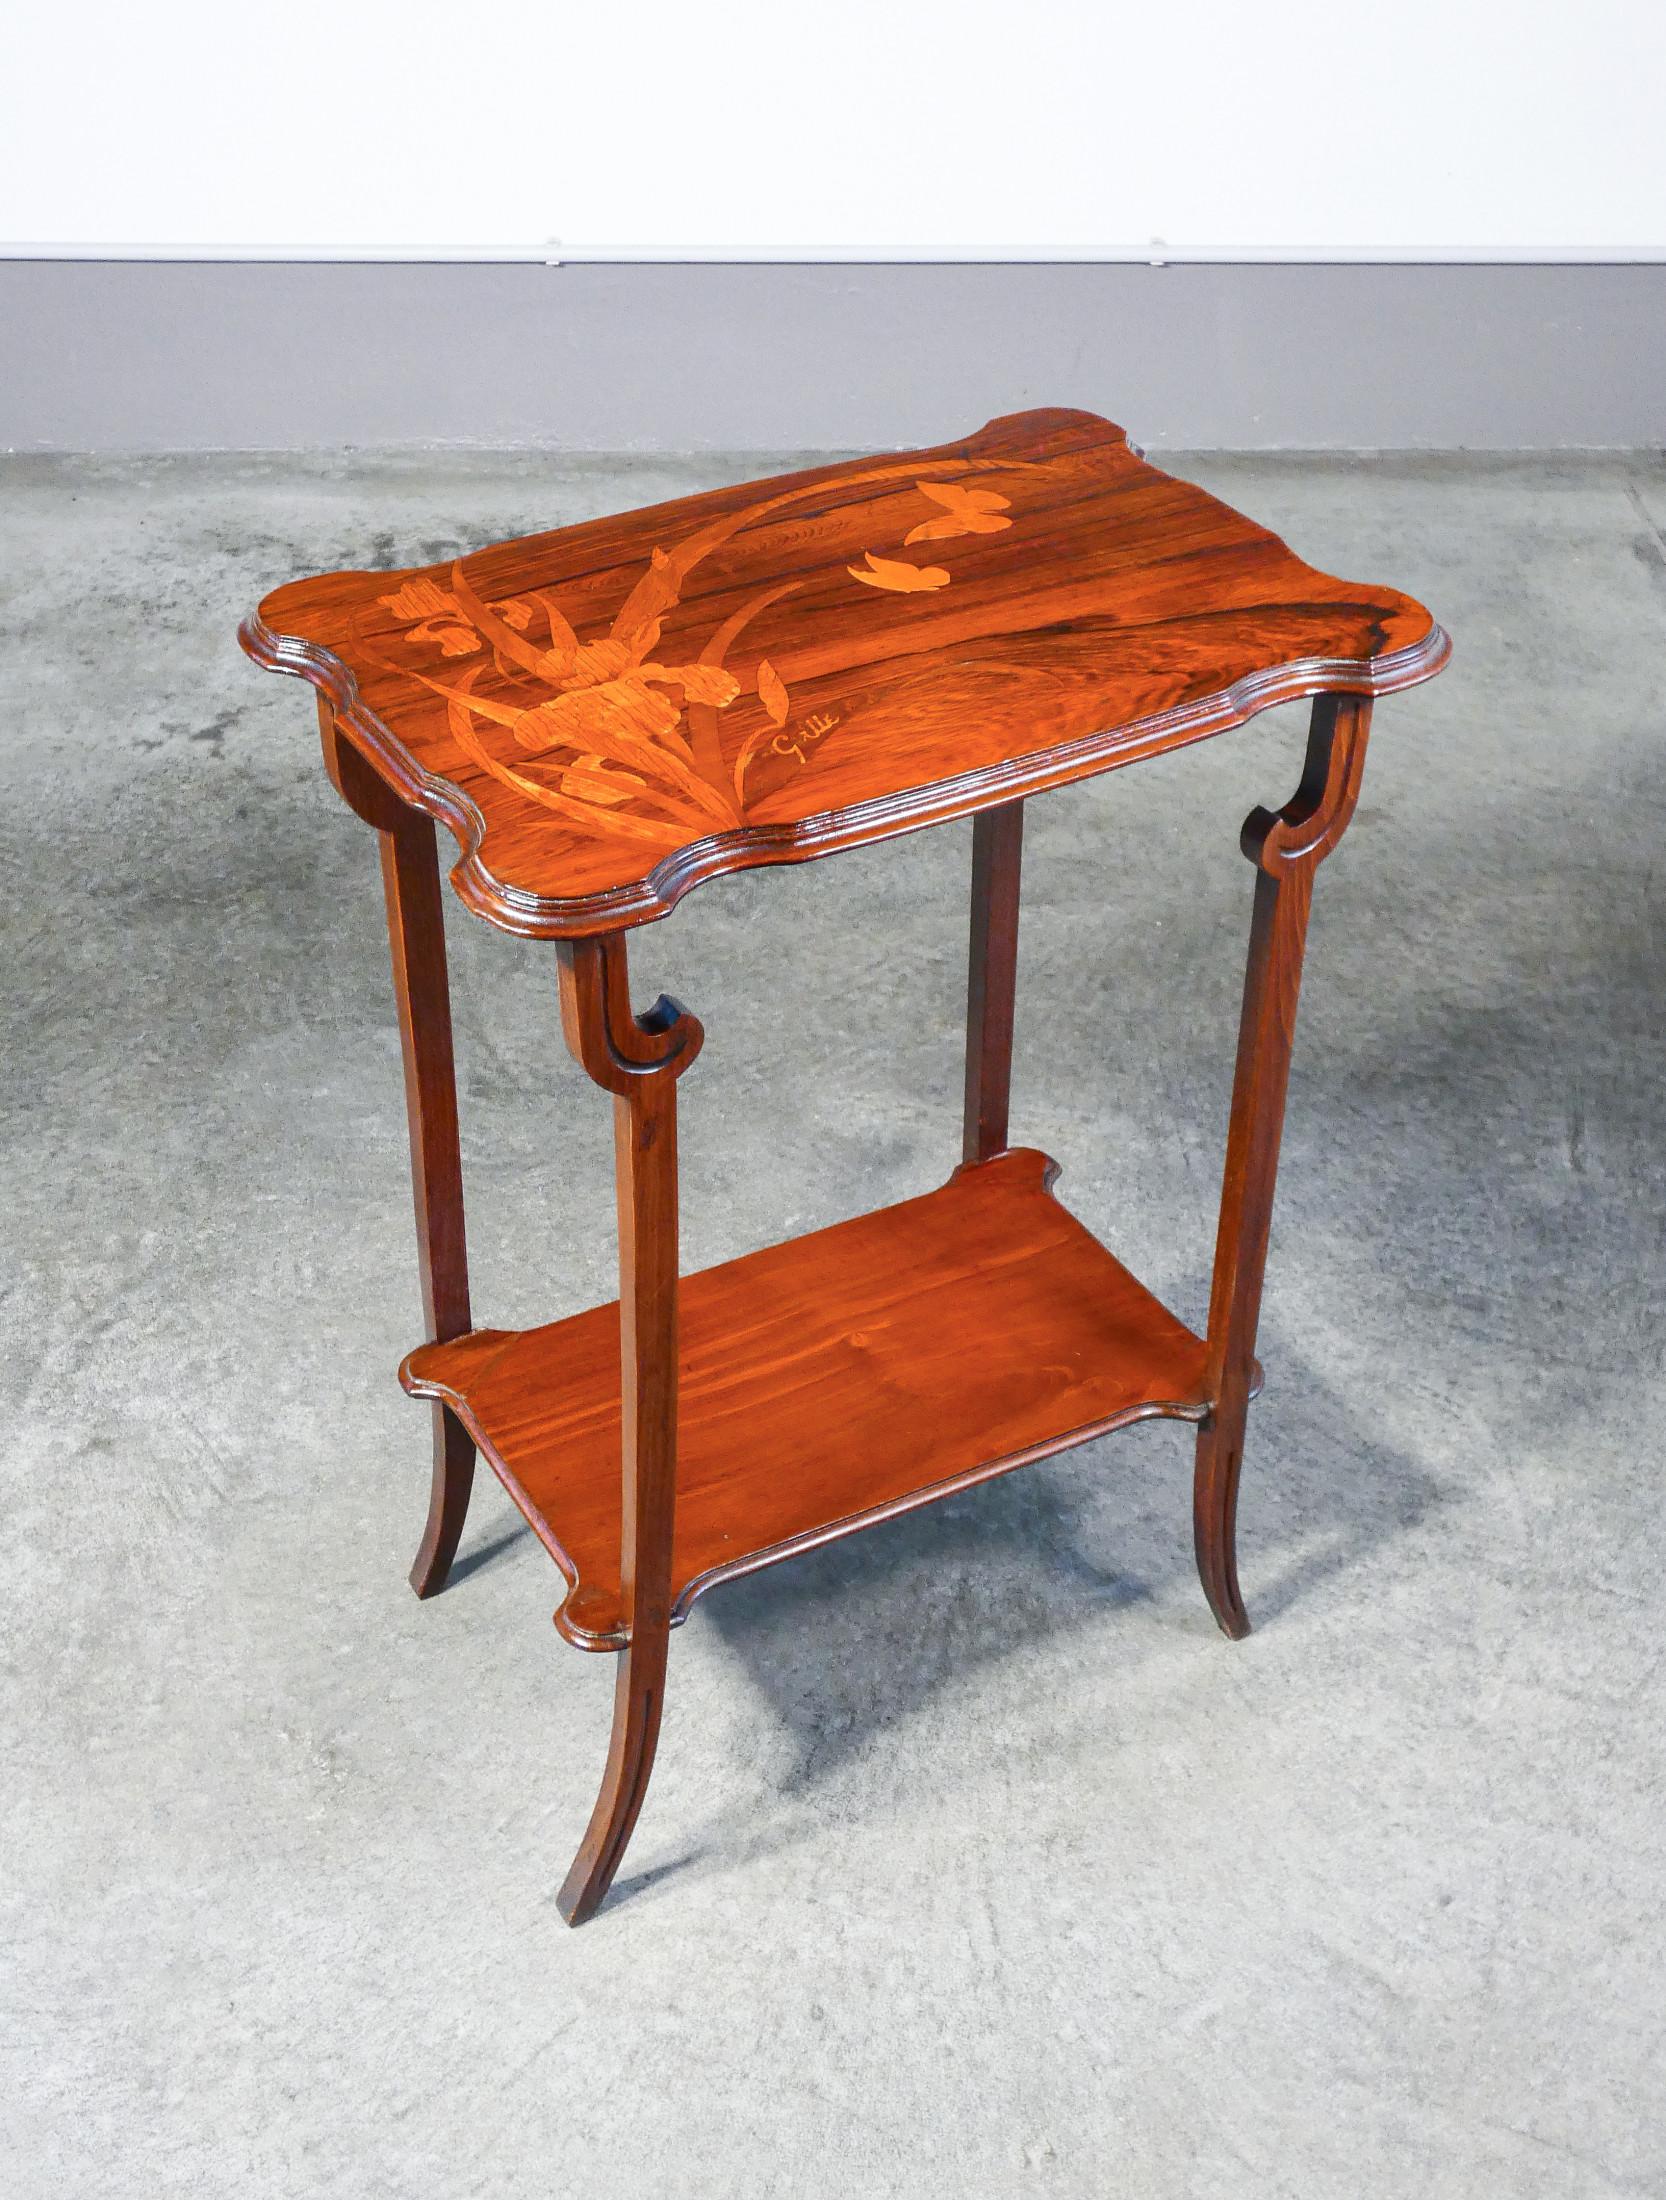 Tavolino da té
Art Nouveau
firmato Émile GALLÉ,
in legno di noce
intarsiato.

ORIGINE
Francia

PERIODO
Secondo Ottocento

AUTORE
Émile GALLÉ è stato un artista francese, noto per il suo ruolo di figura chiave nell'arte del vetro e nel movimento